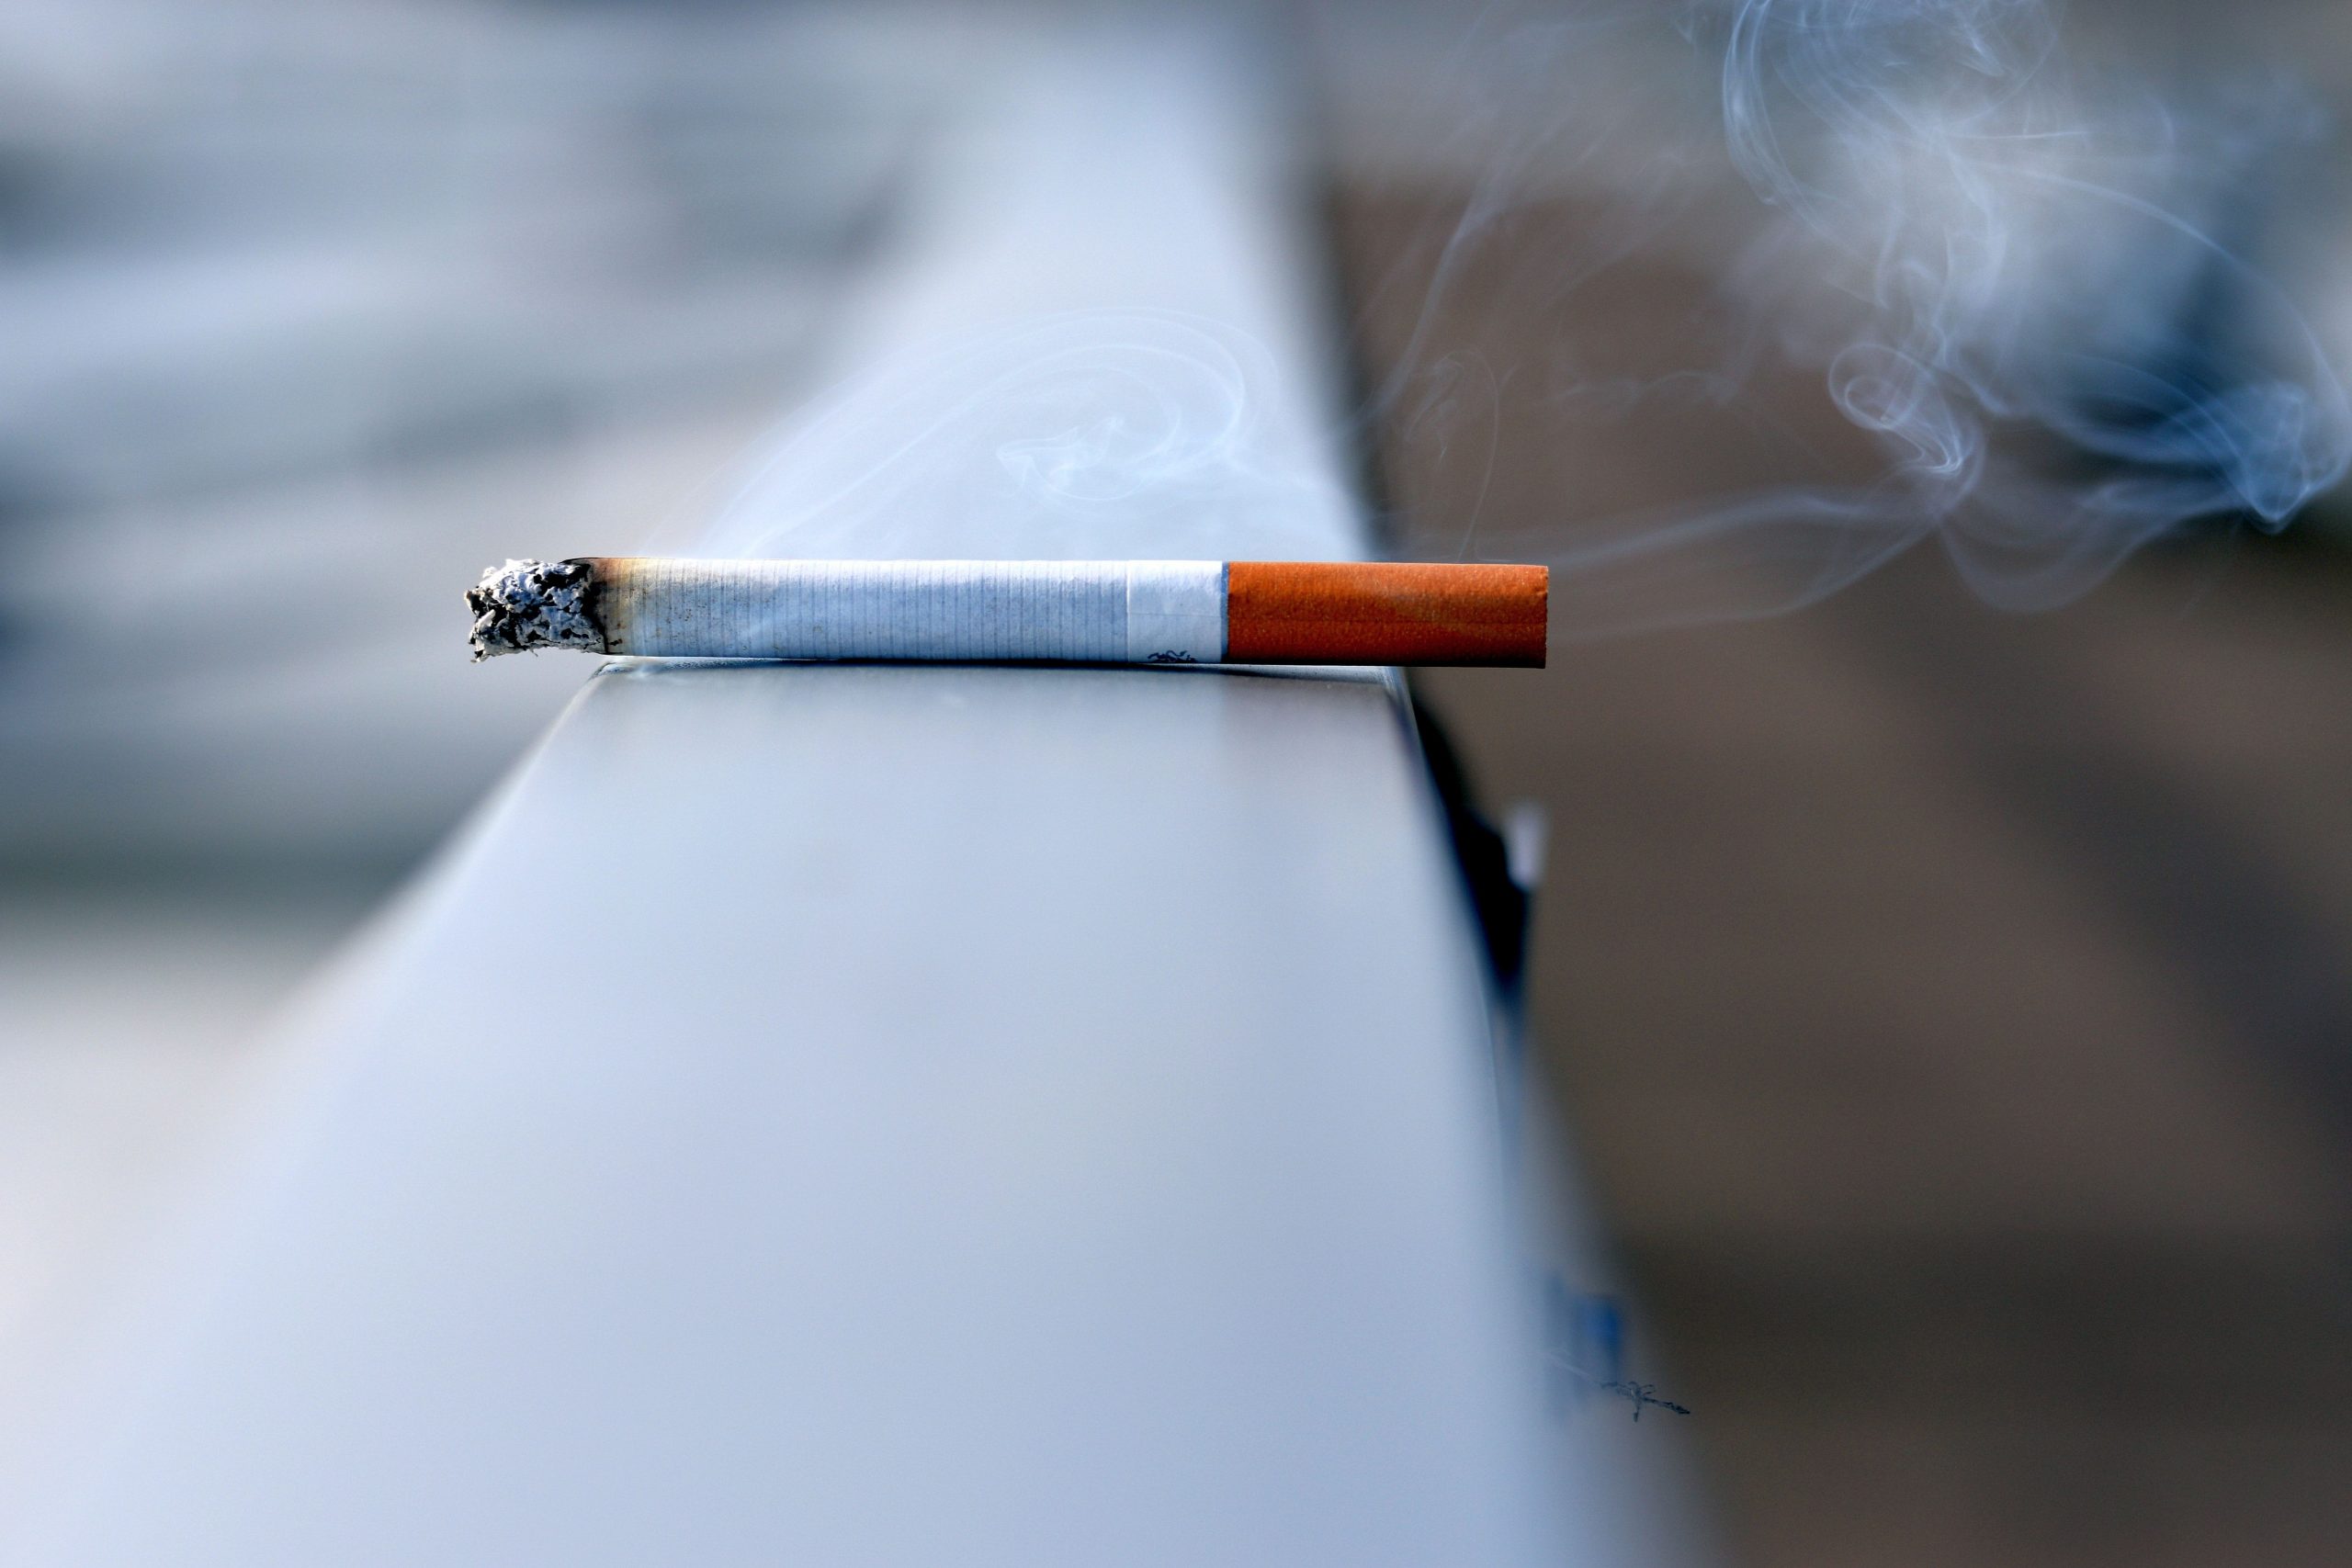 धूम्रपान से भी ज्यादा खतरनाक है ये 5 आदतें, जानकर रह जाएंगे हैरान